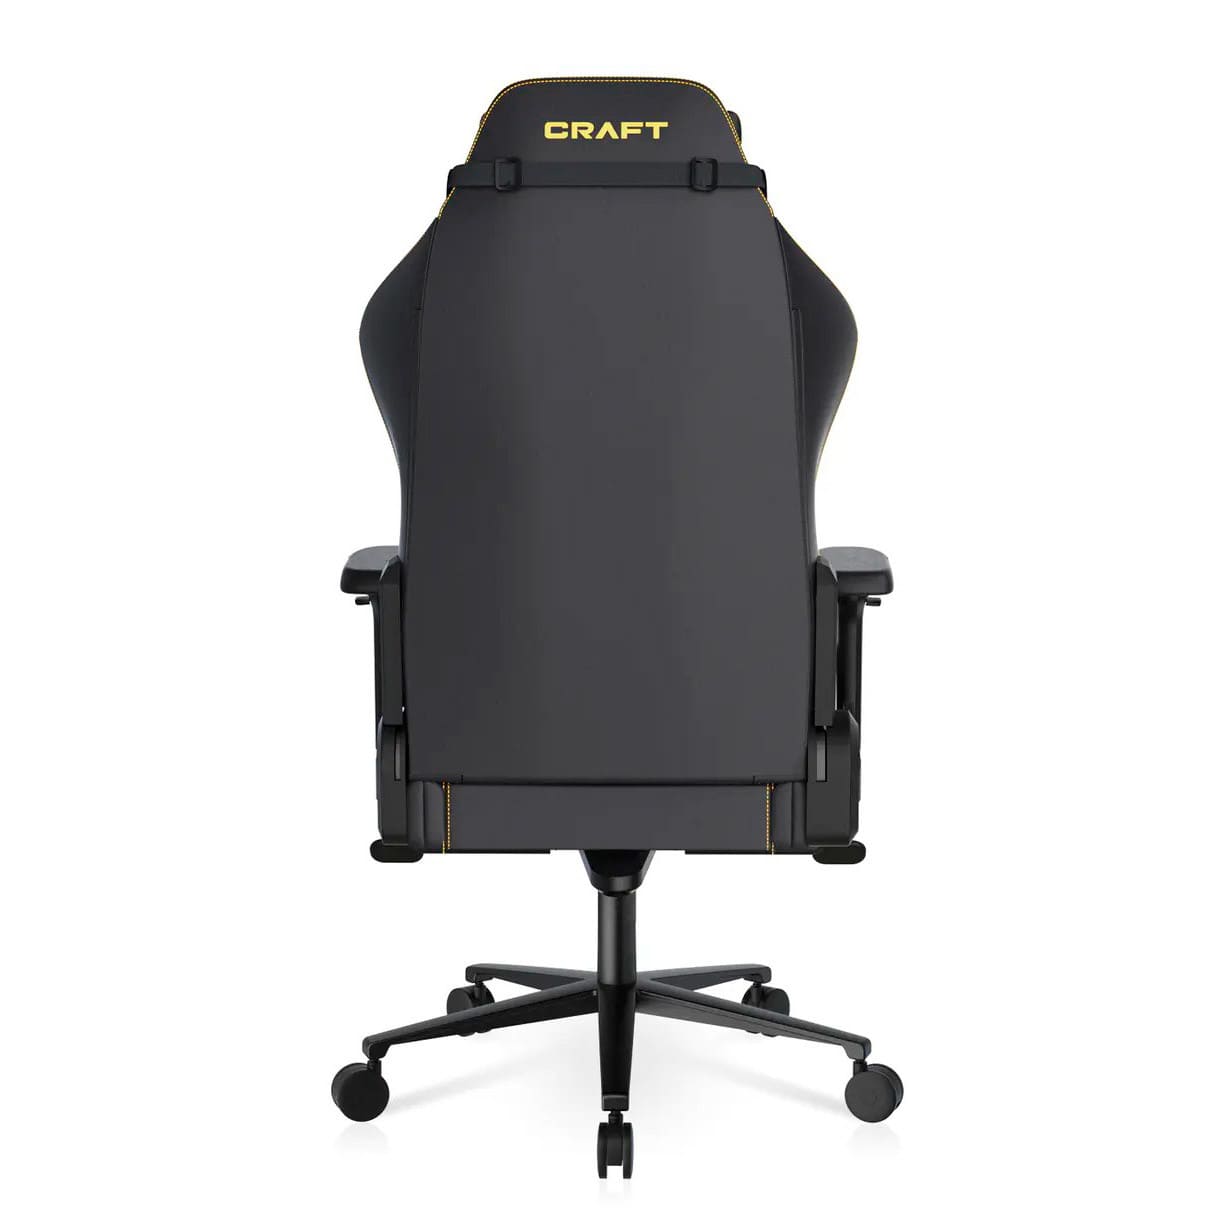 Геймерское кресло DXRacer CRA/D5000/N